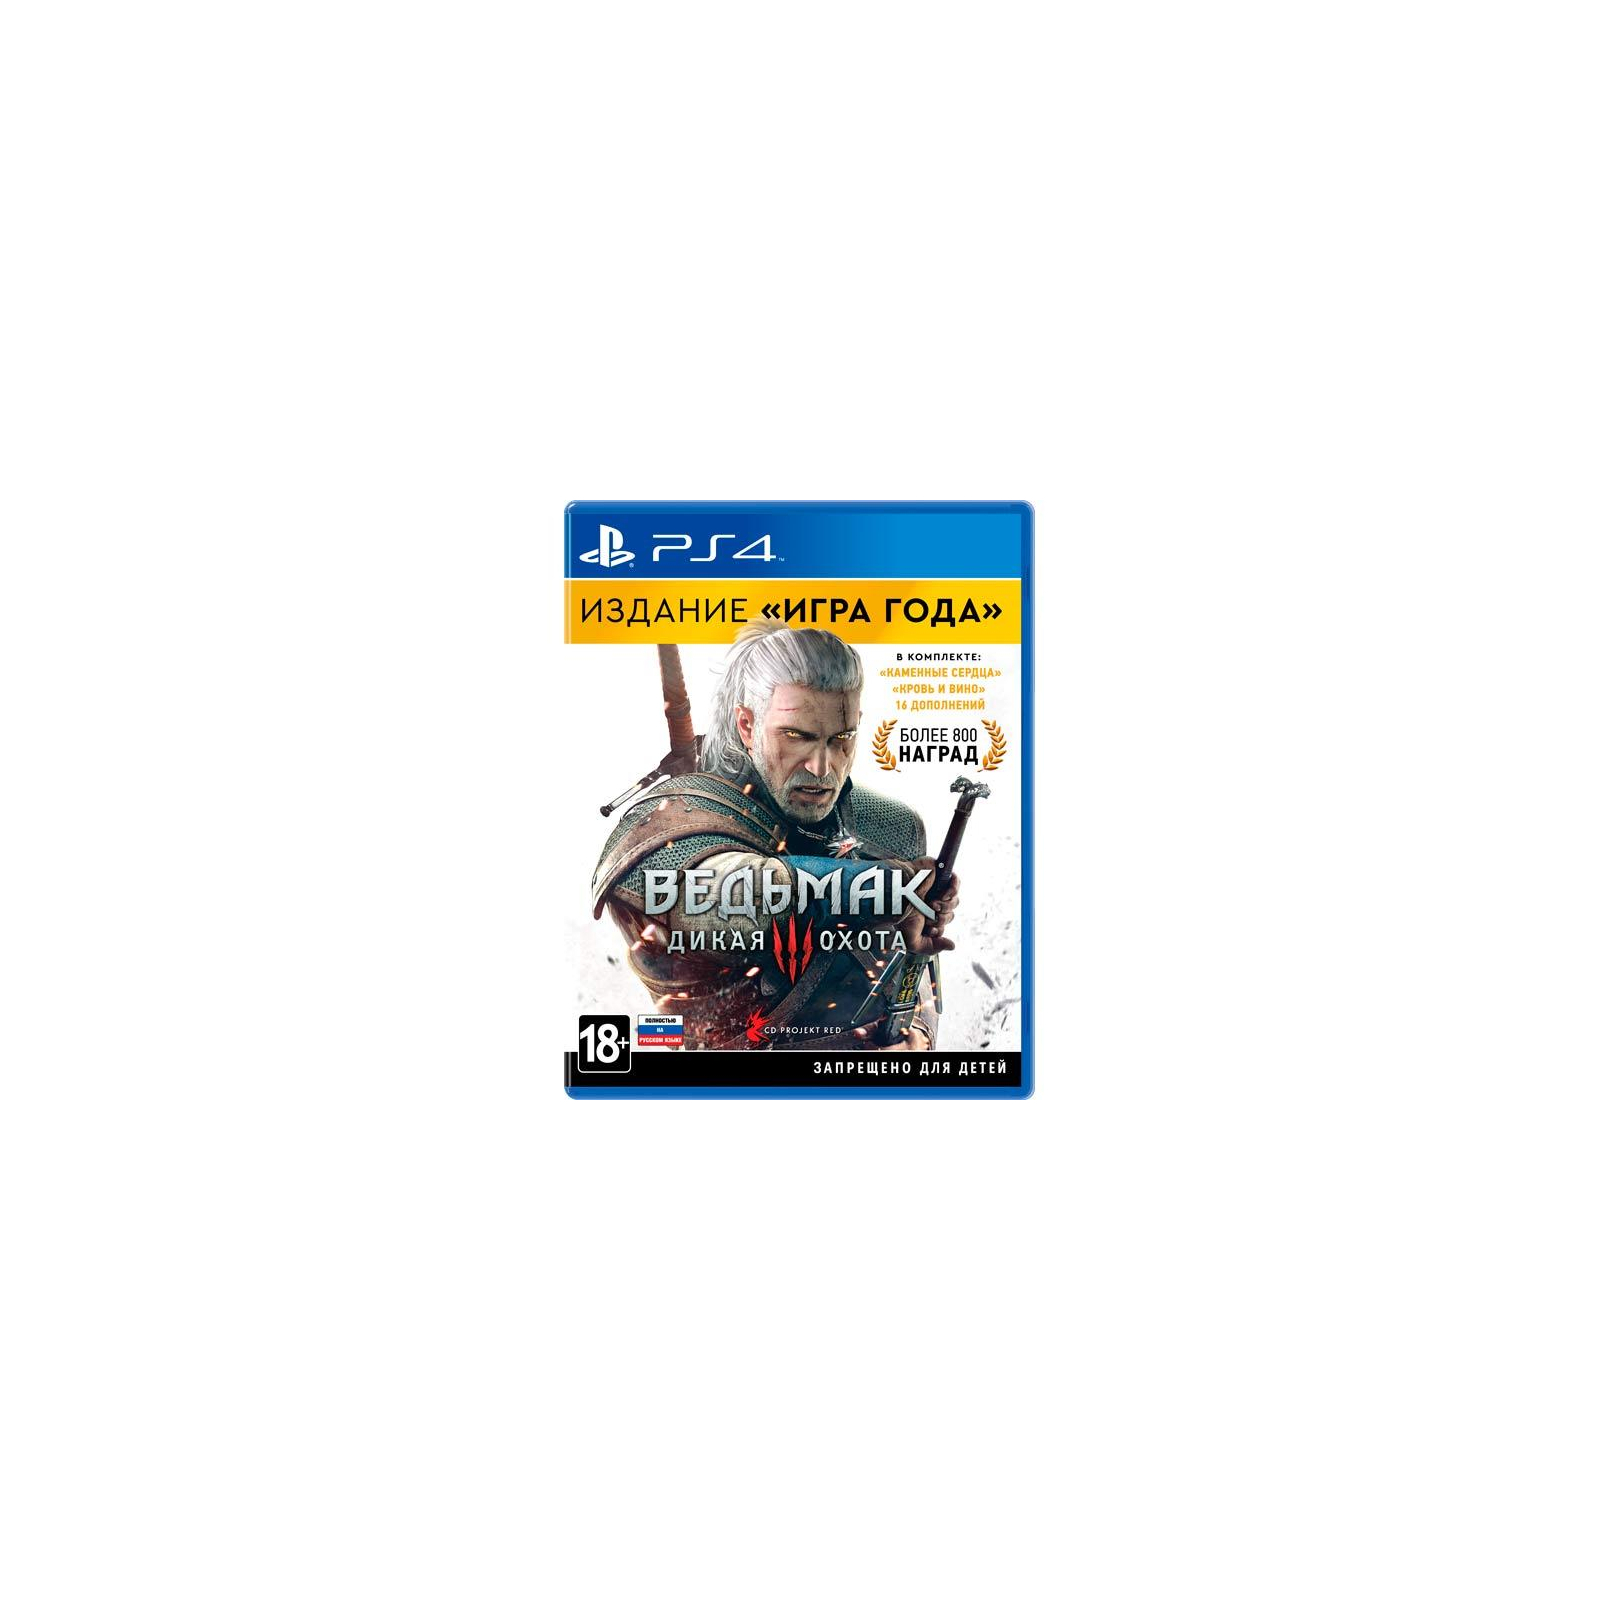 Игра Sony Ведьмак 3: Дикая Охота. Издание "Игра Года" [Blu-Ray диск] (PSIV324)